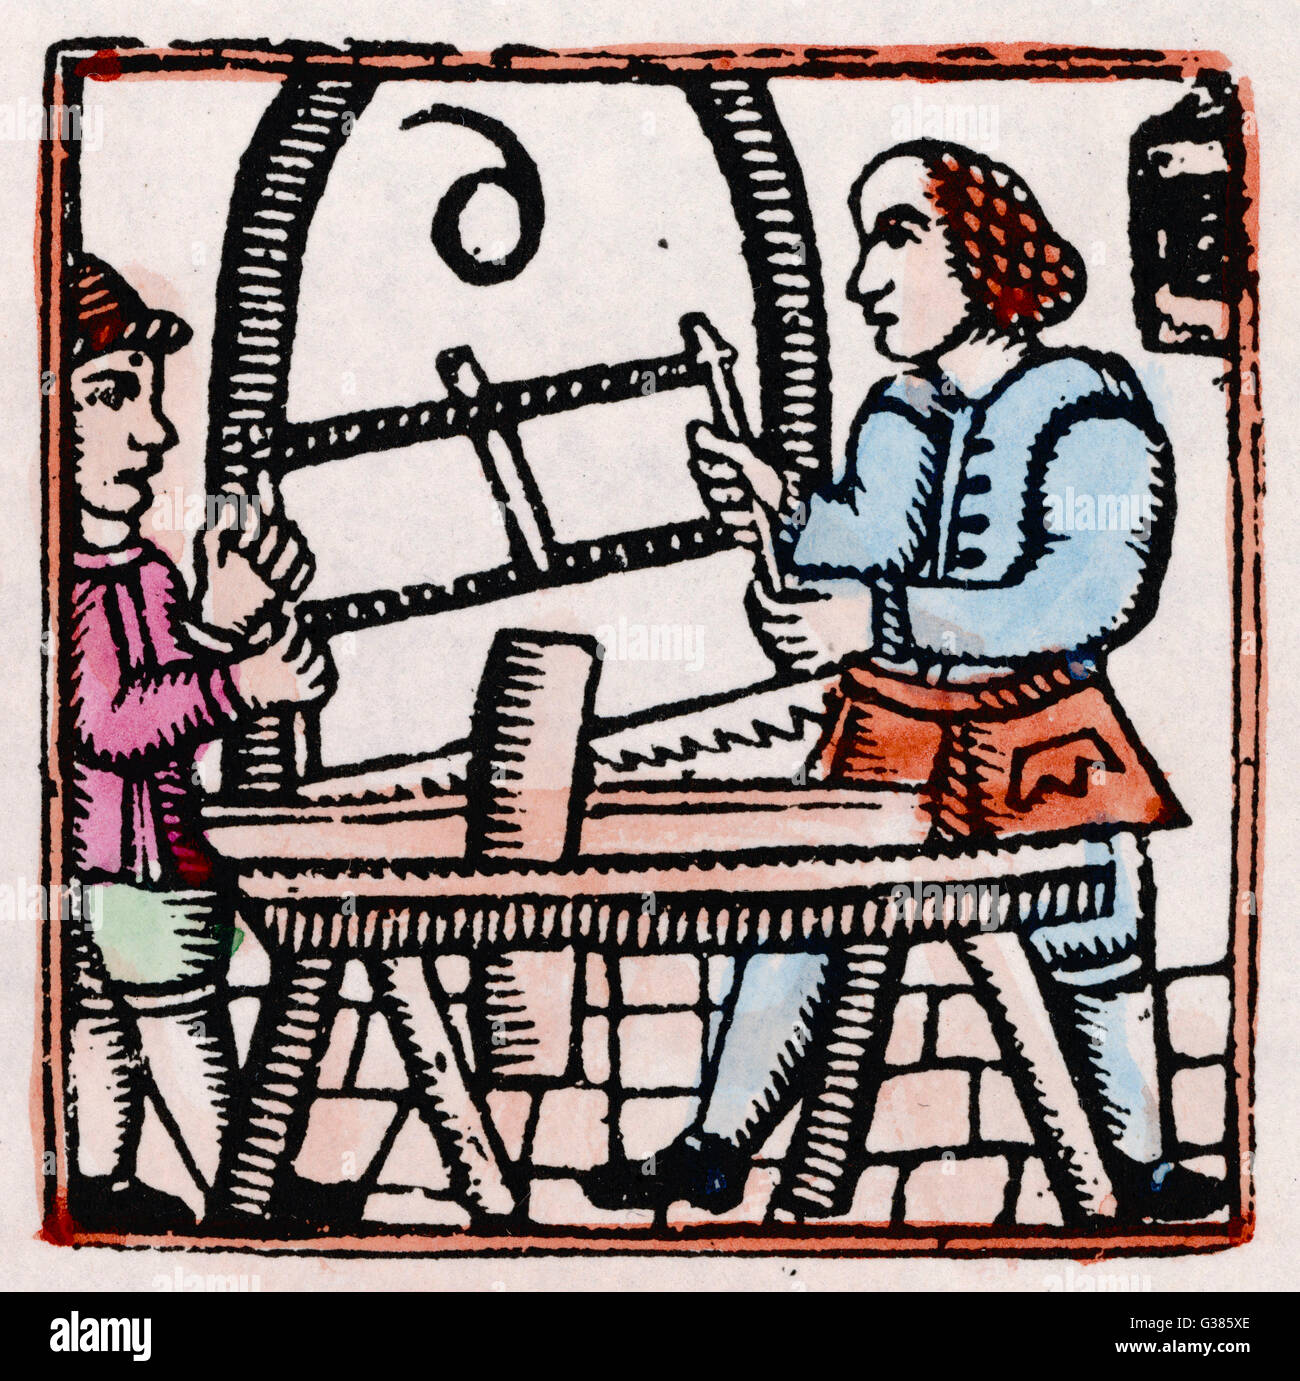 Holzarbeiter des 17.. Jahrhunderts - Holzschnitt Stockfoto